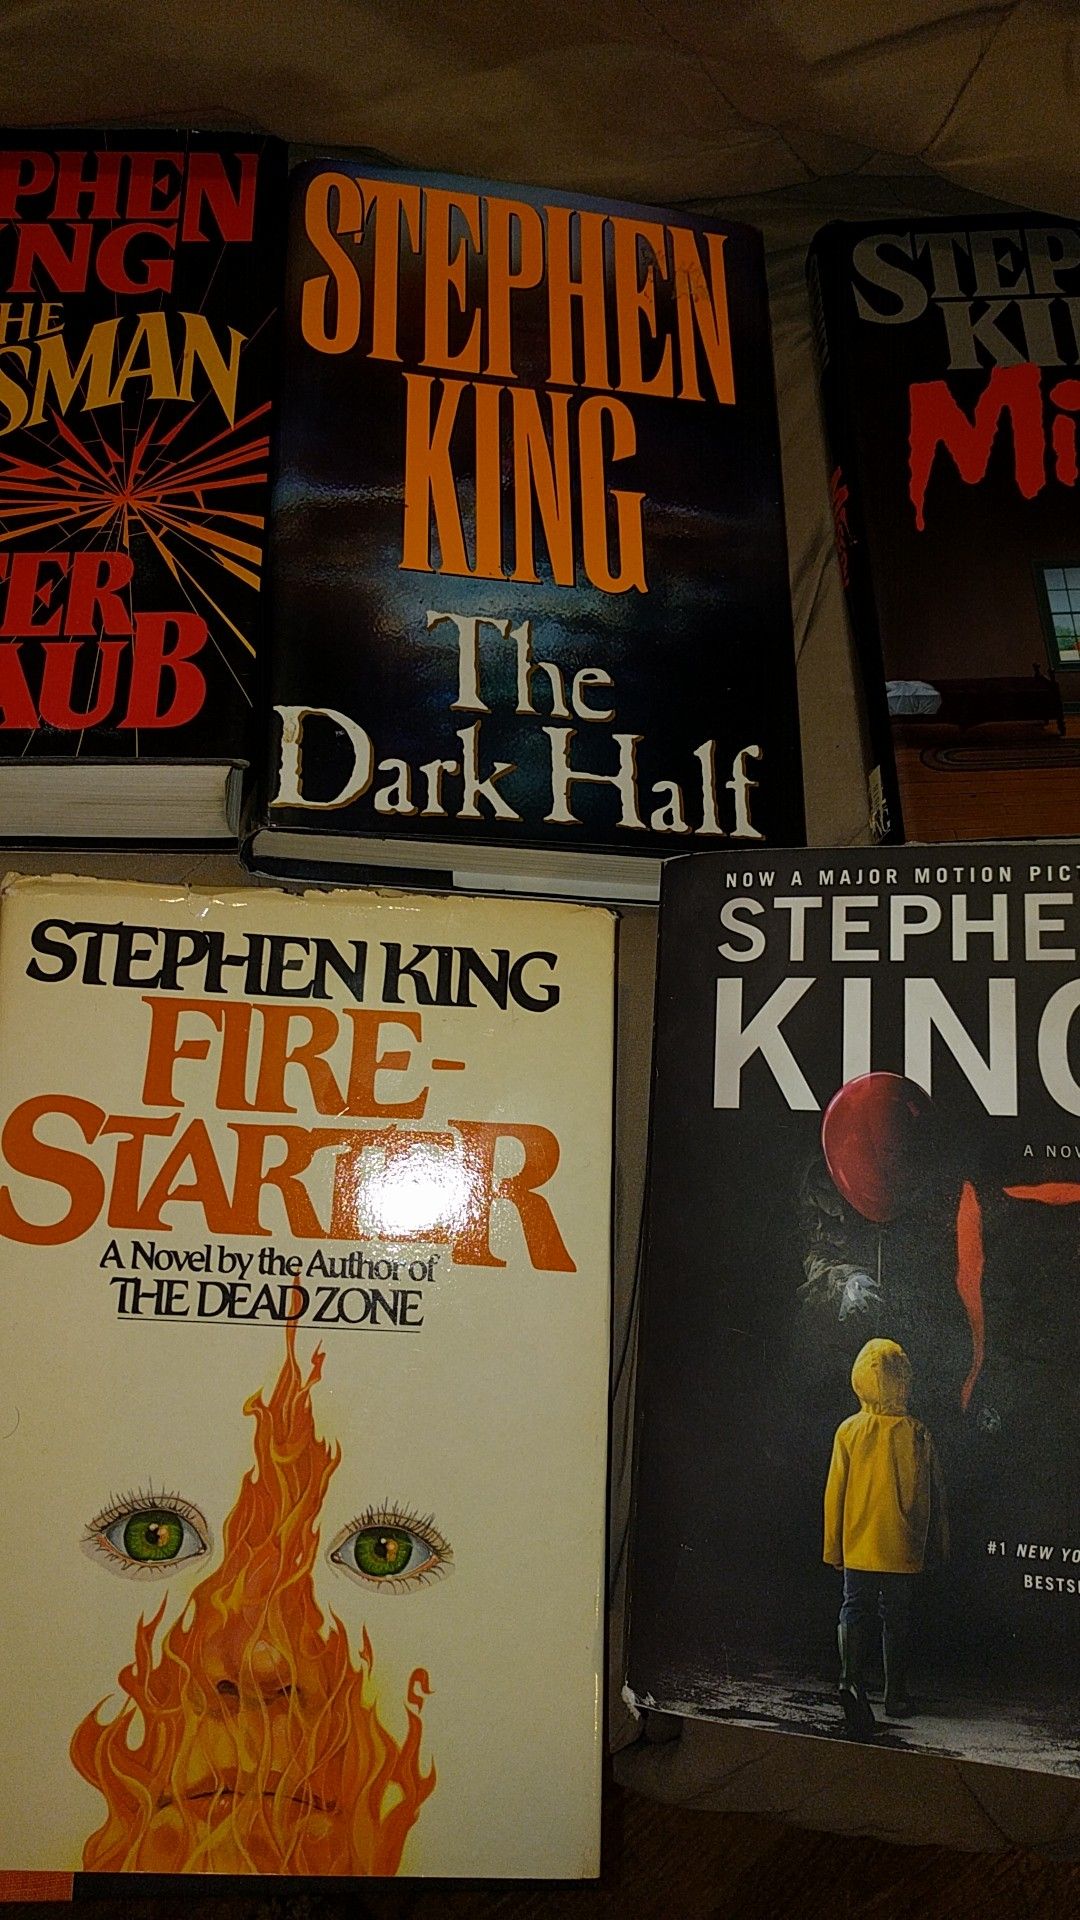 Stephen King books